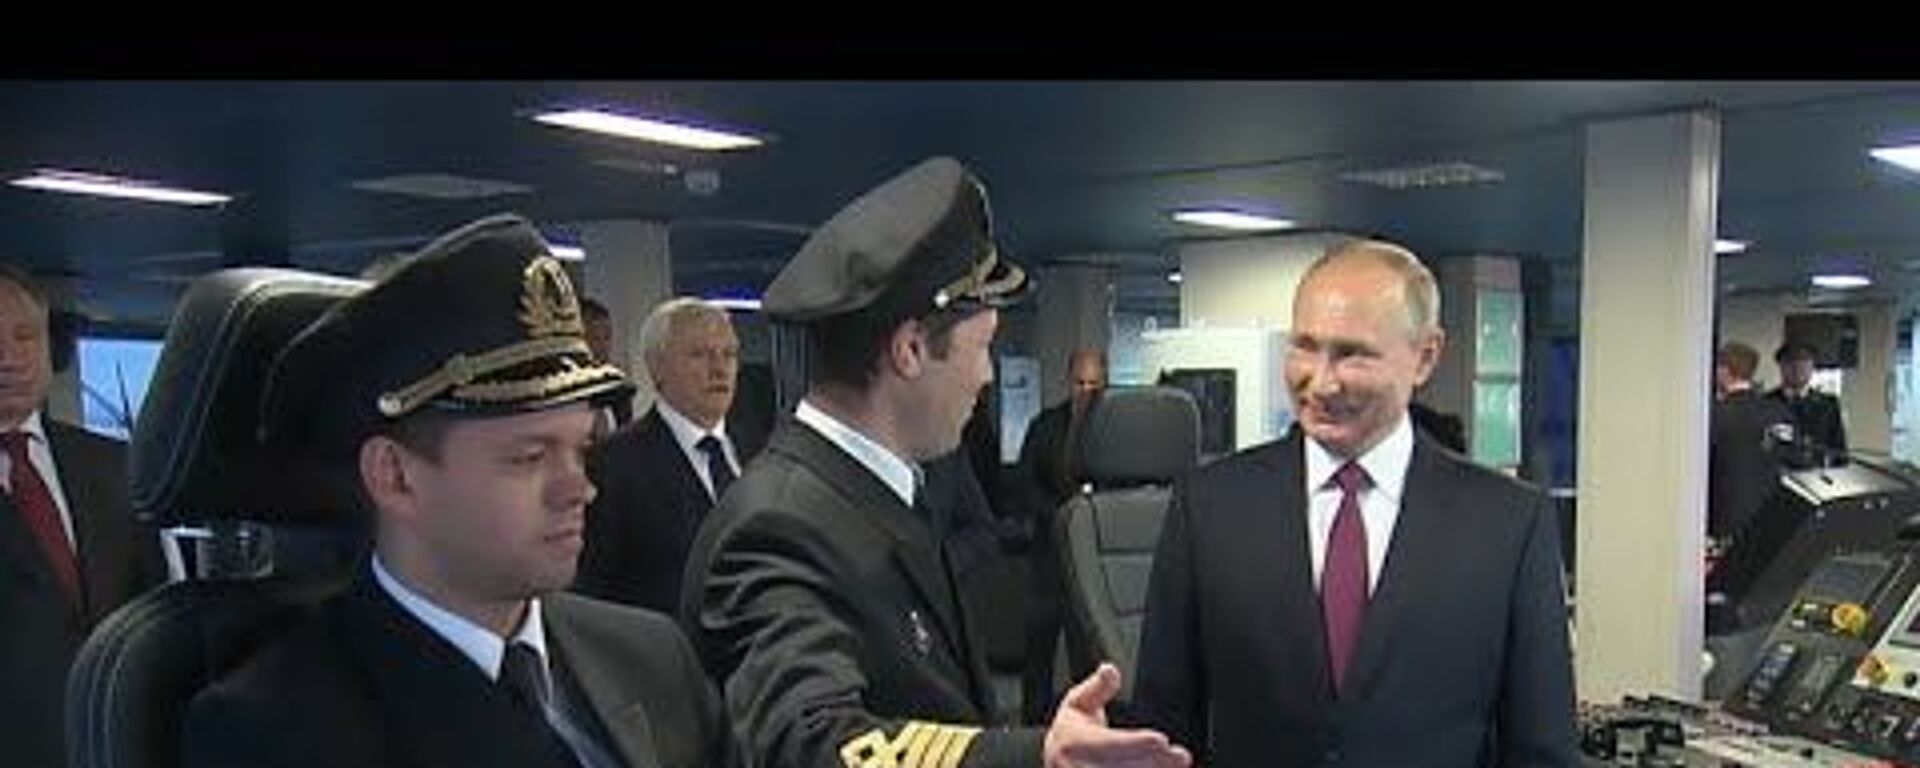 Президент России осмотрел новый неатомный ледокол, признанный самым большим в мире - Sputnik Латвия, 1920, 05.11.2020